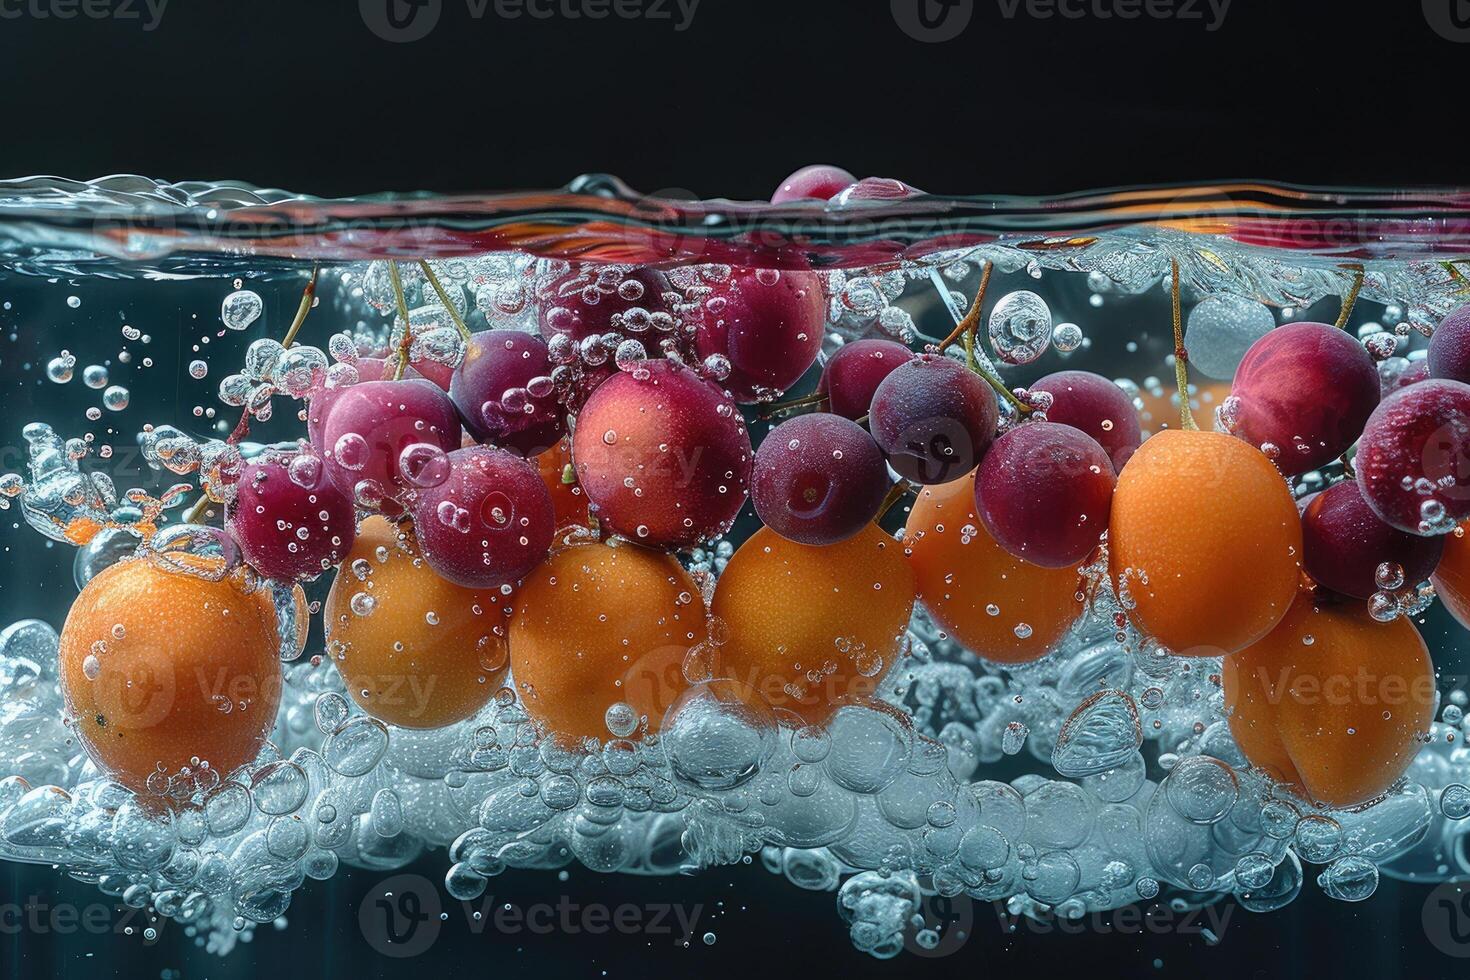 un Fresco frutas o vegetales con agua gotas creando un chapoteo publicidad comida fotografía foto